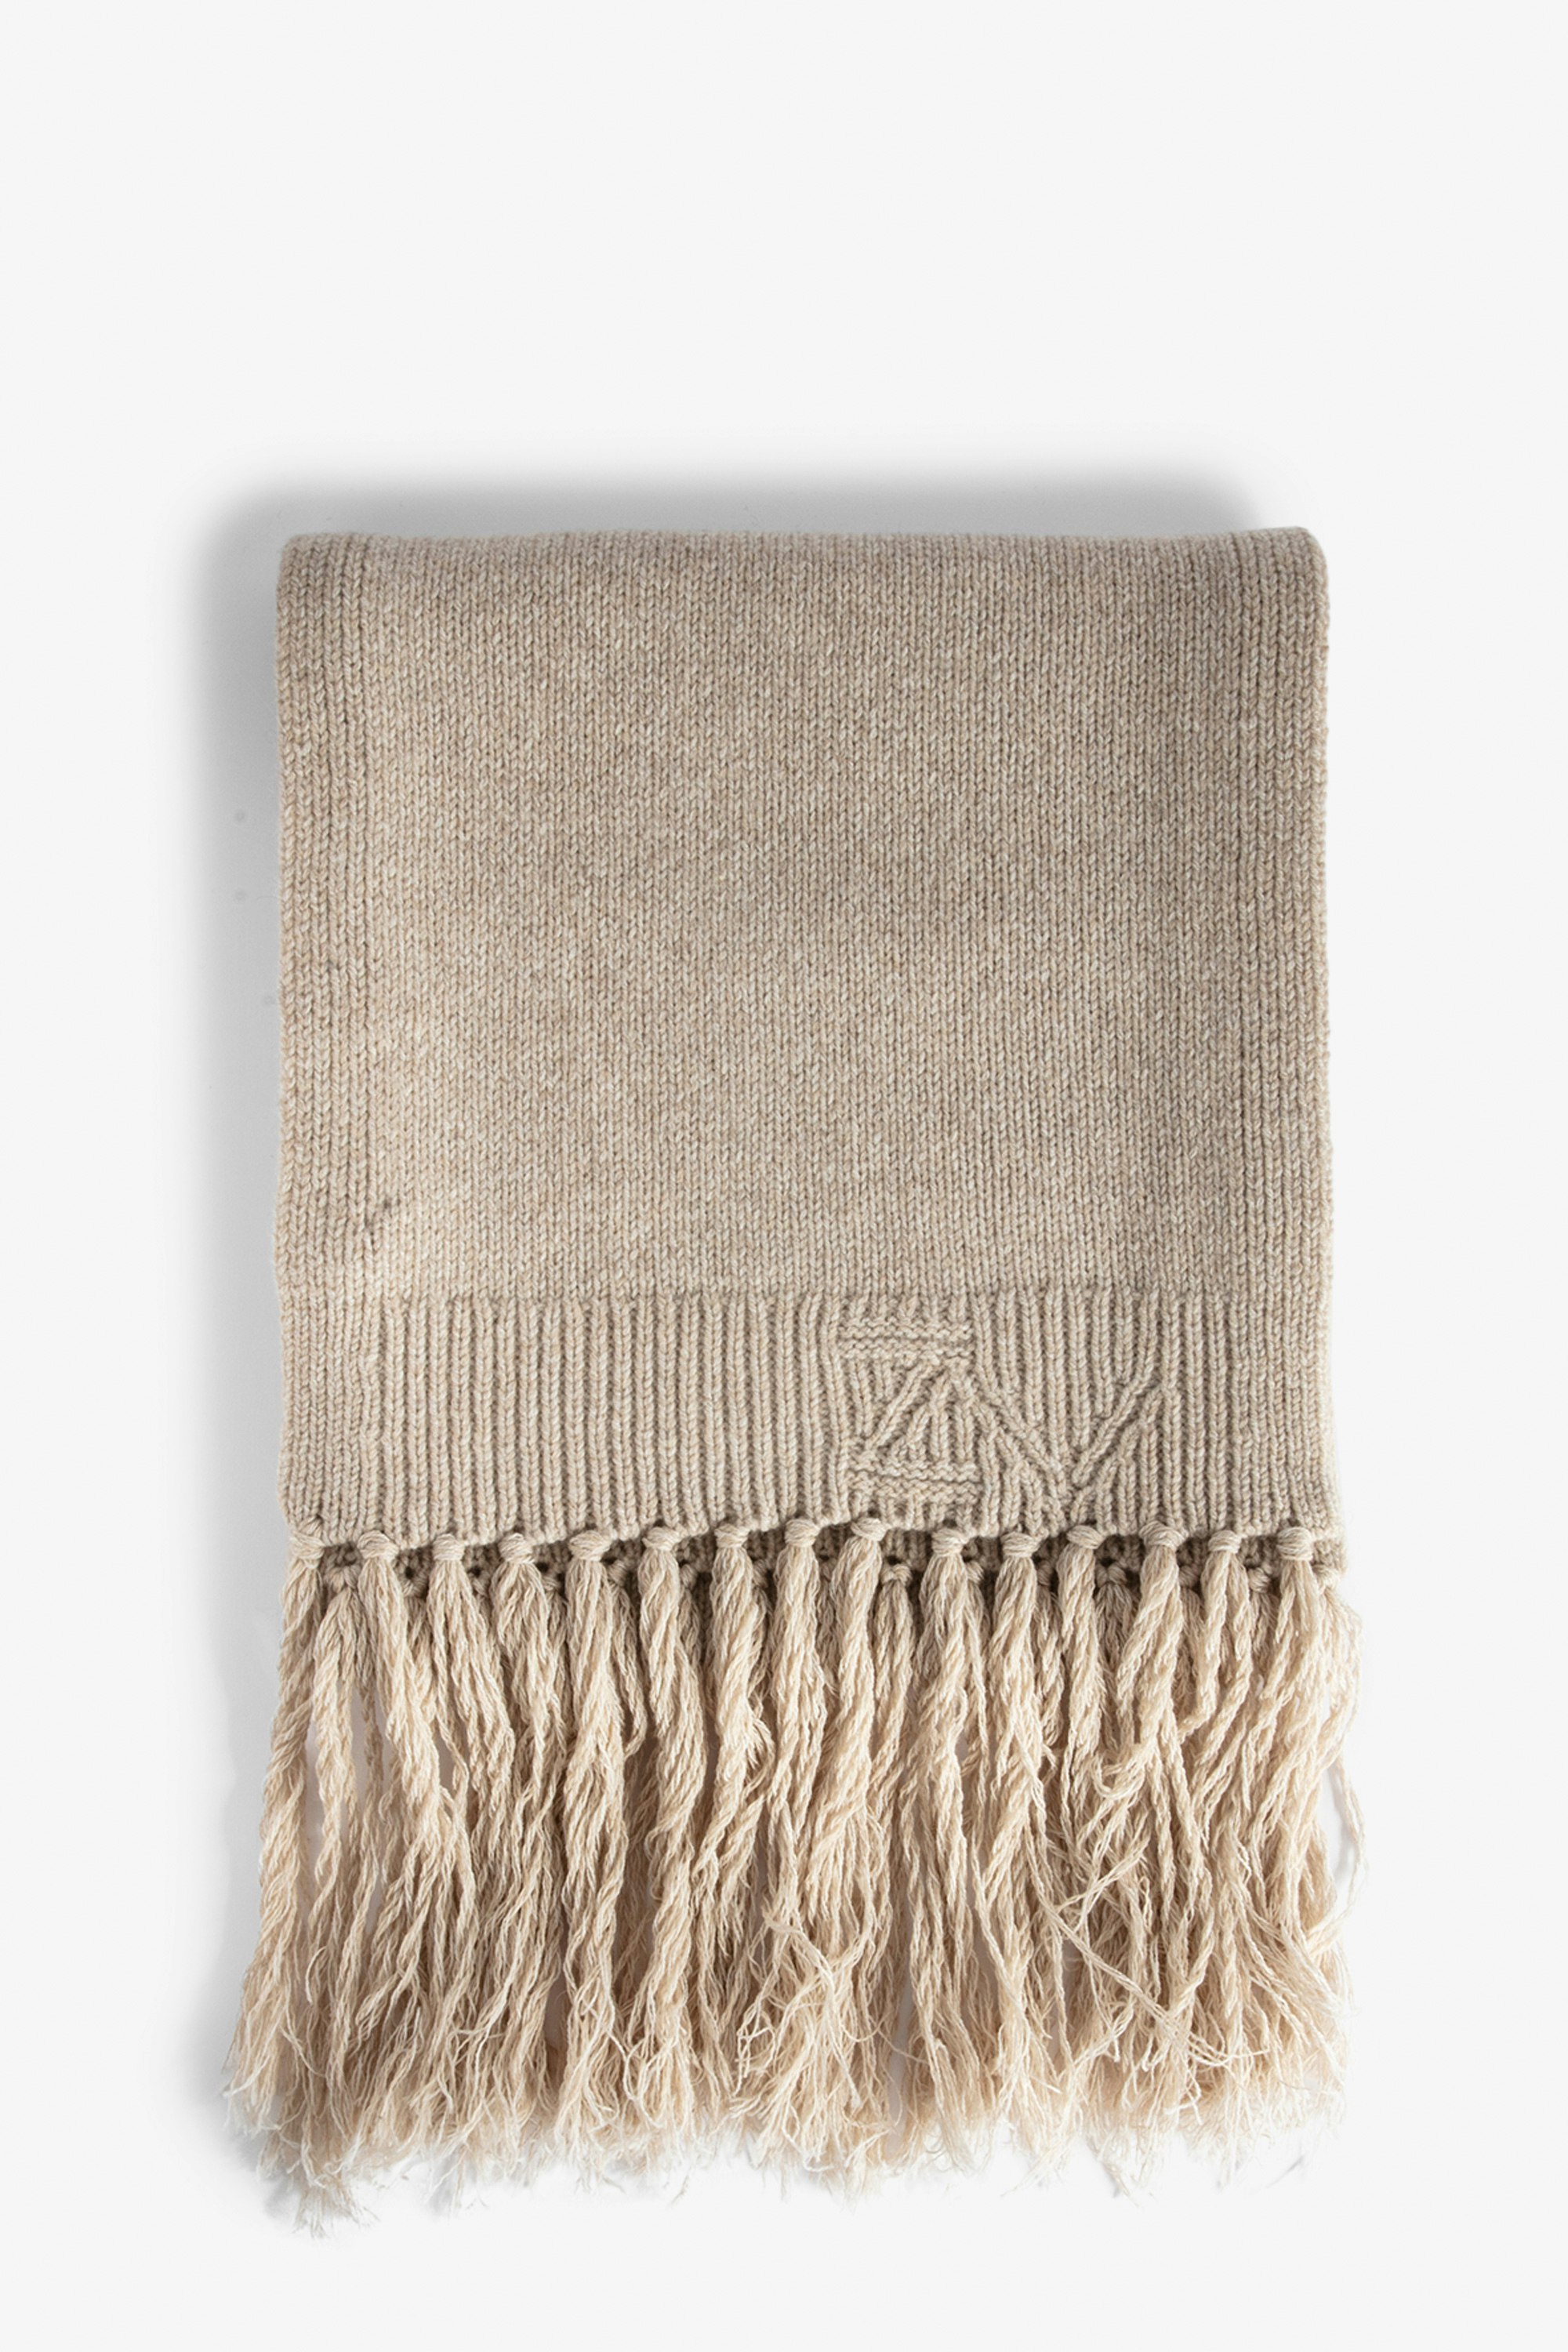 Leila Scarf - Women’s long fringed beige wool mix scarf.